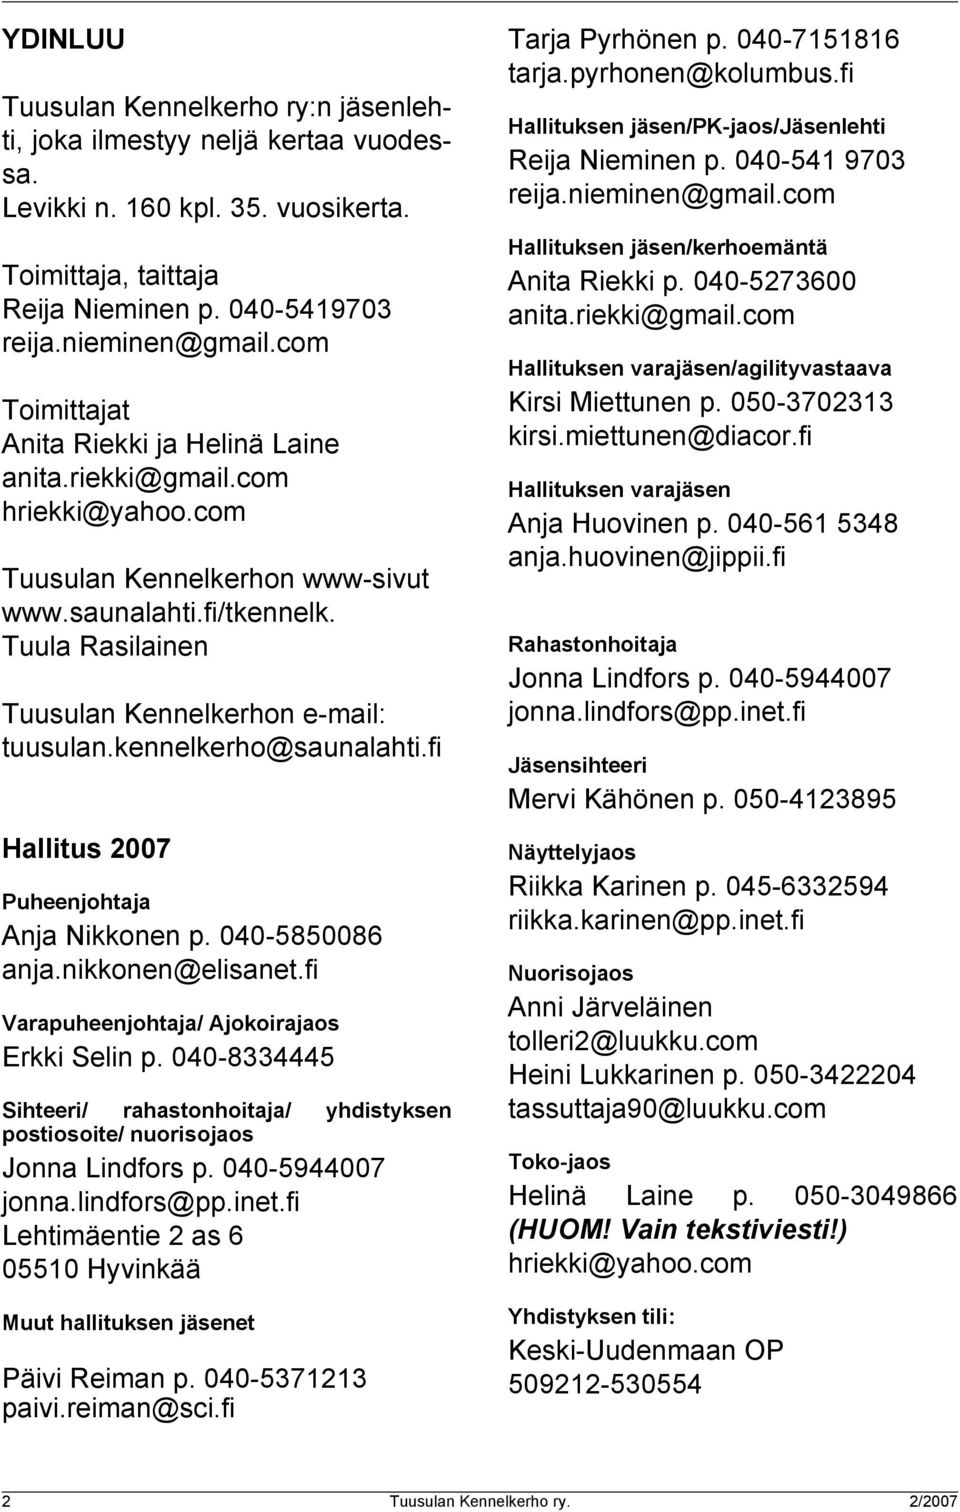 Tuula Rasilainen Tuusulan Kennelkerhon e-mail: tuusulan.kennelkerho@saunalahti.fi Hallitus 2007 Puheenjohtaja Anja Nikkonen p. 040-5850086 anja.nikkonen@elisanet.